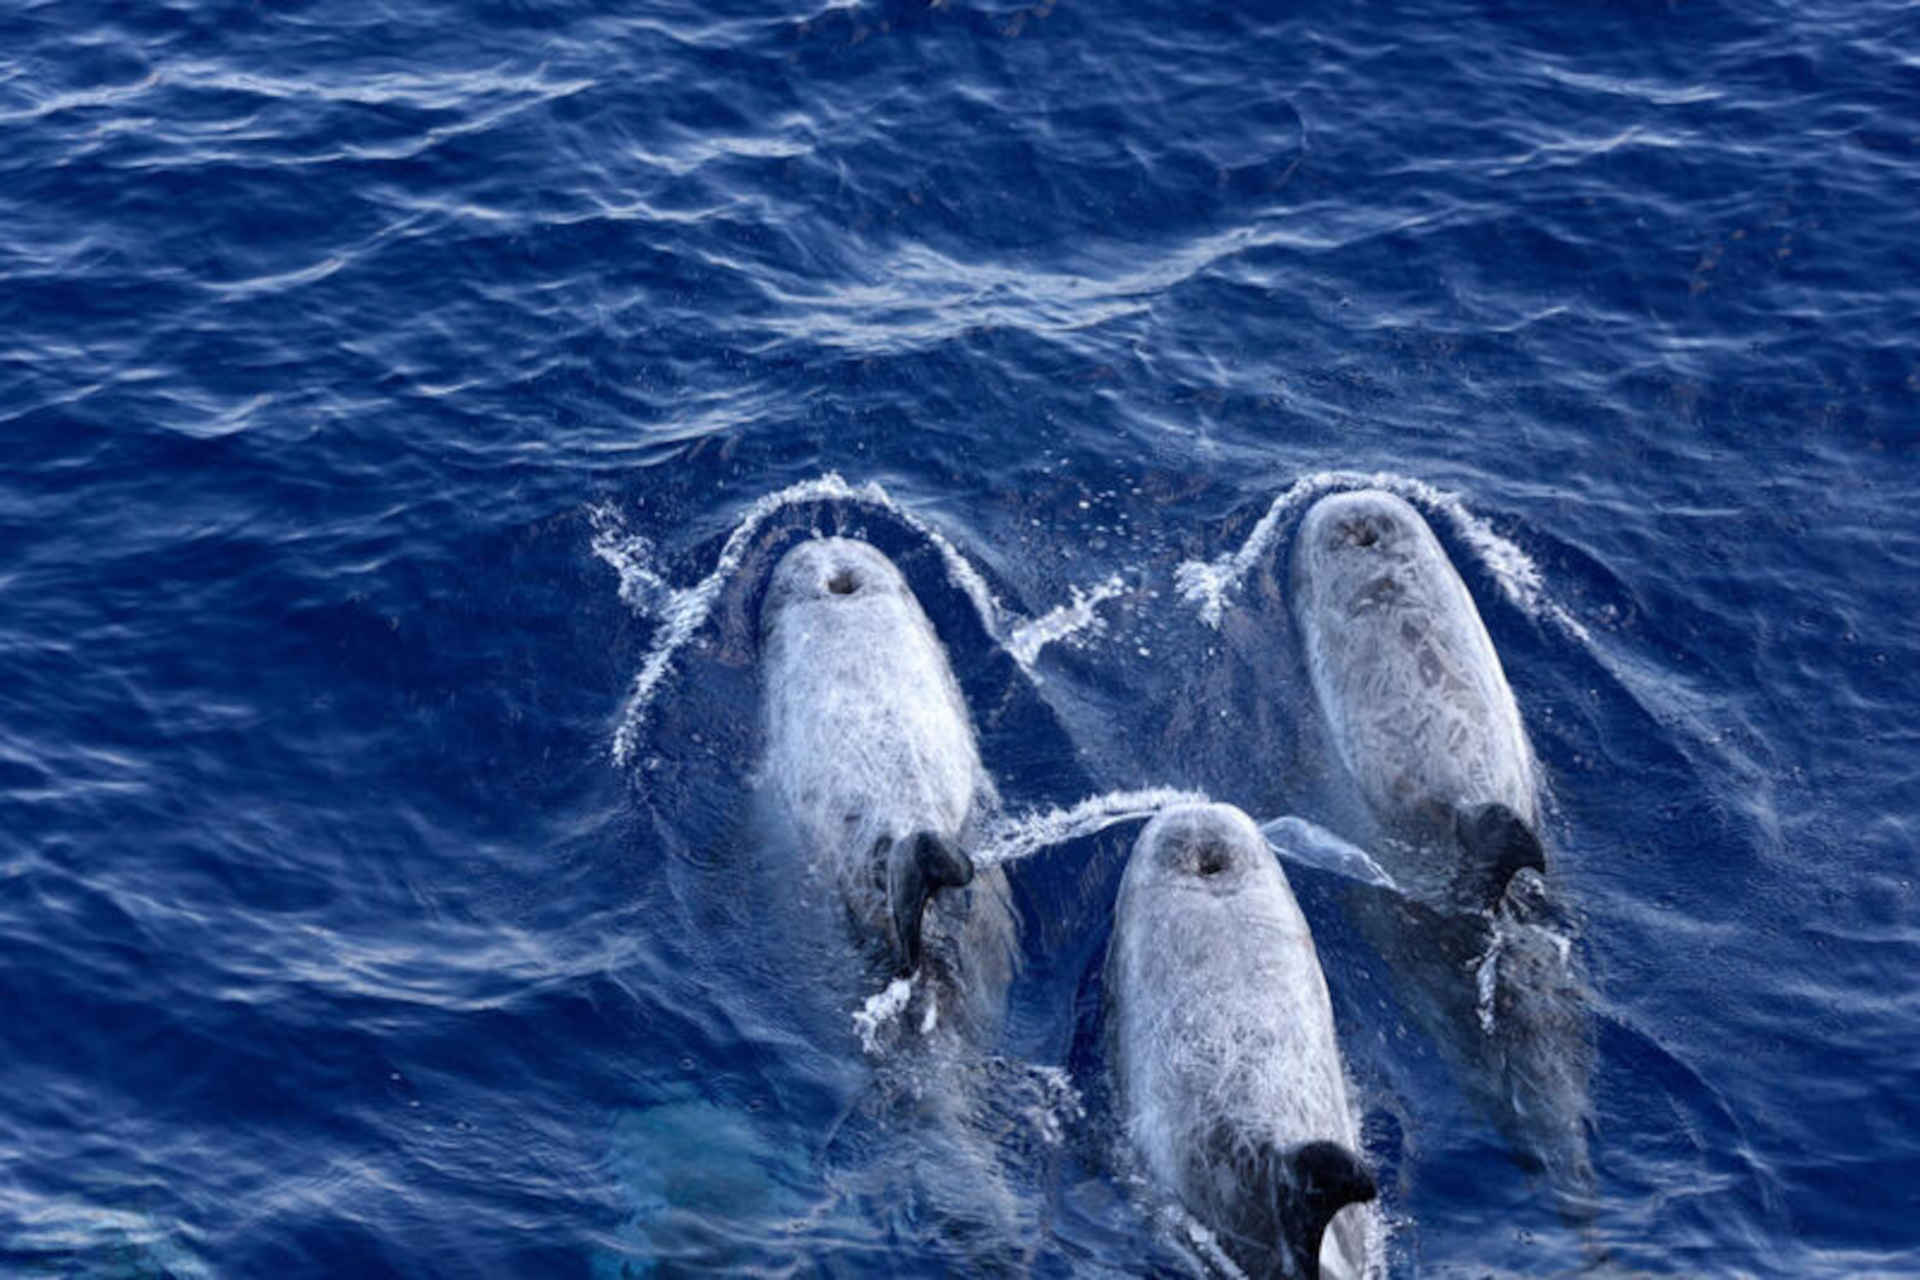 Yunani, pengeboran lepas pantai mengancam hewan cetacea